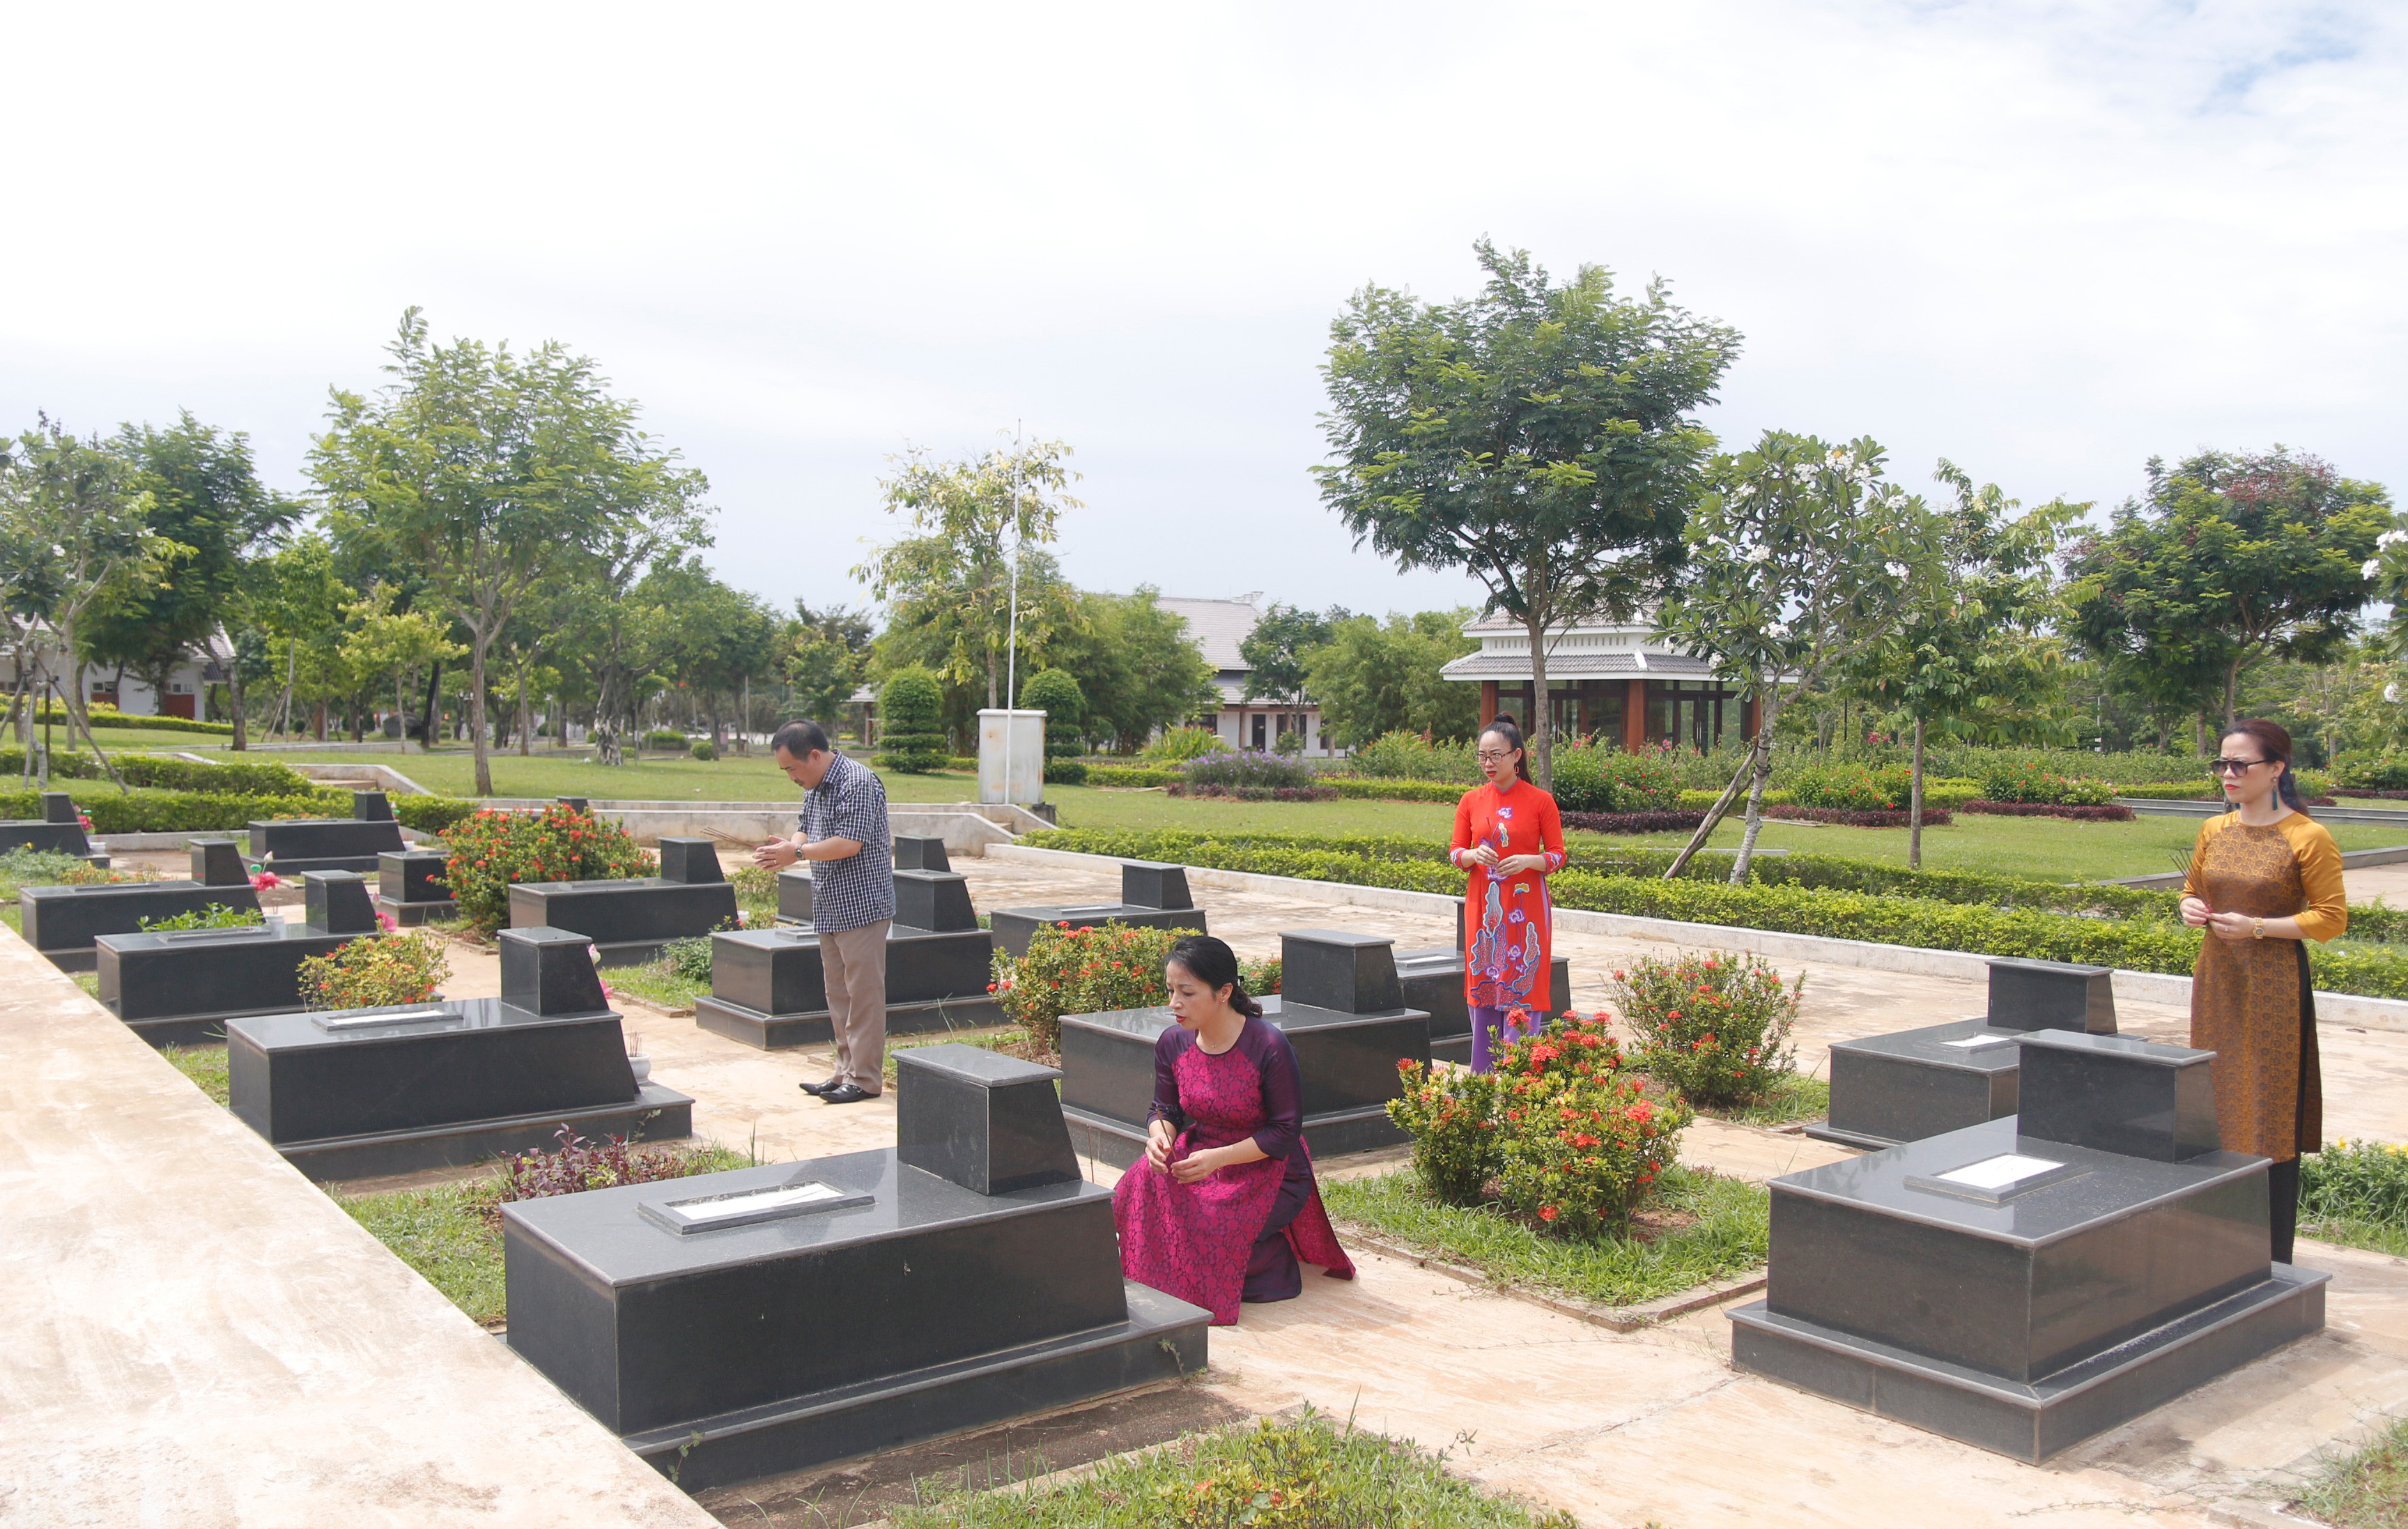  Nghĩa trang liệt sỹ tỉnh Quảng Nam có 5.620 mộ liệt sĩ, trong đó 1600 mộ không có tên, 125 Bà mẹ VNAH và 37 lão thành cách mạng. Ảnh: Phương Anh